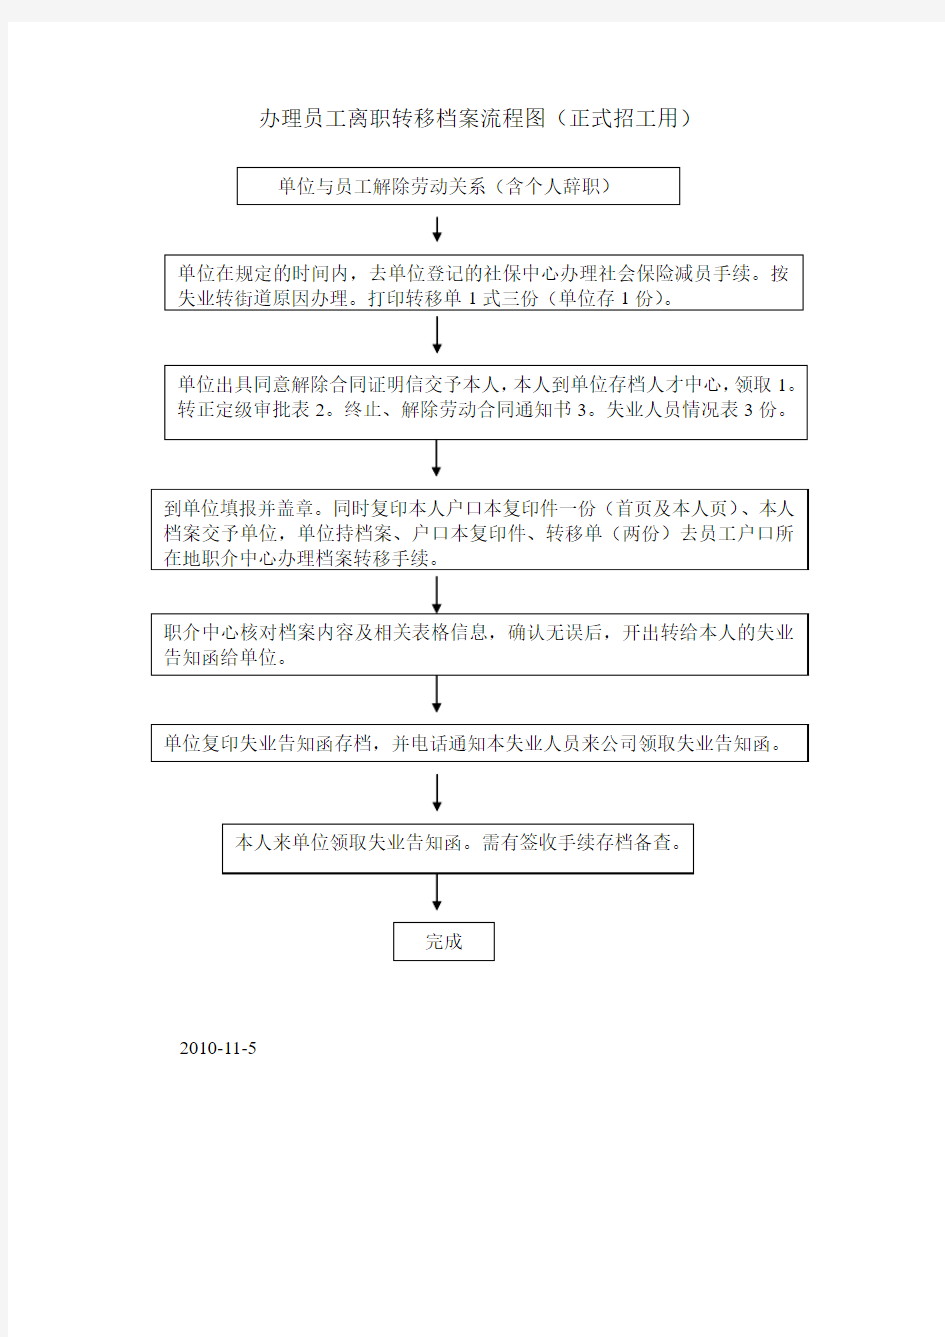 办理员工离职转移档案流程图(朝阳区)